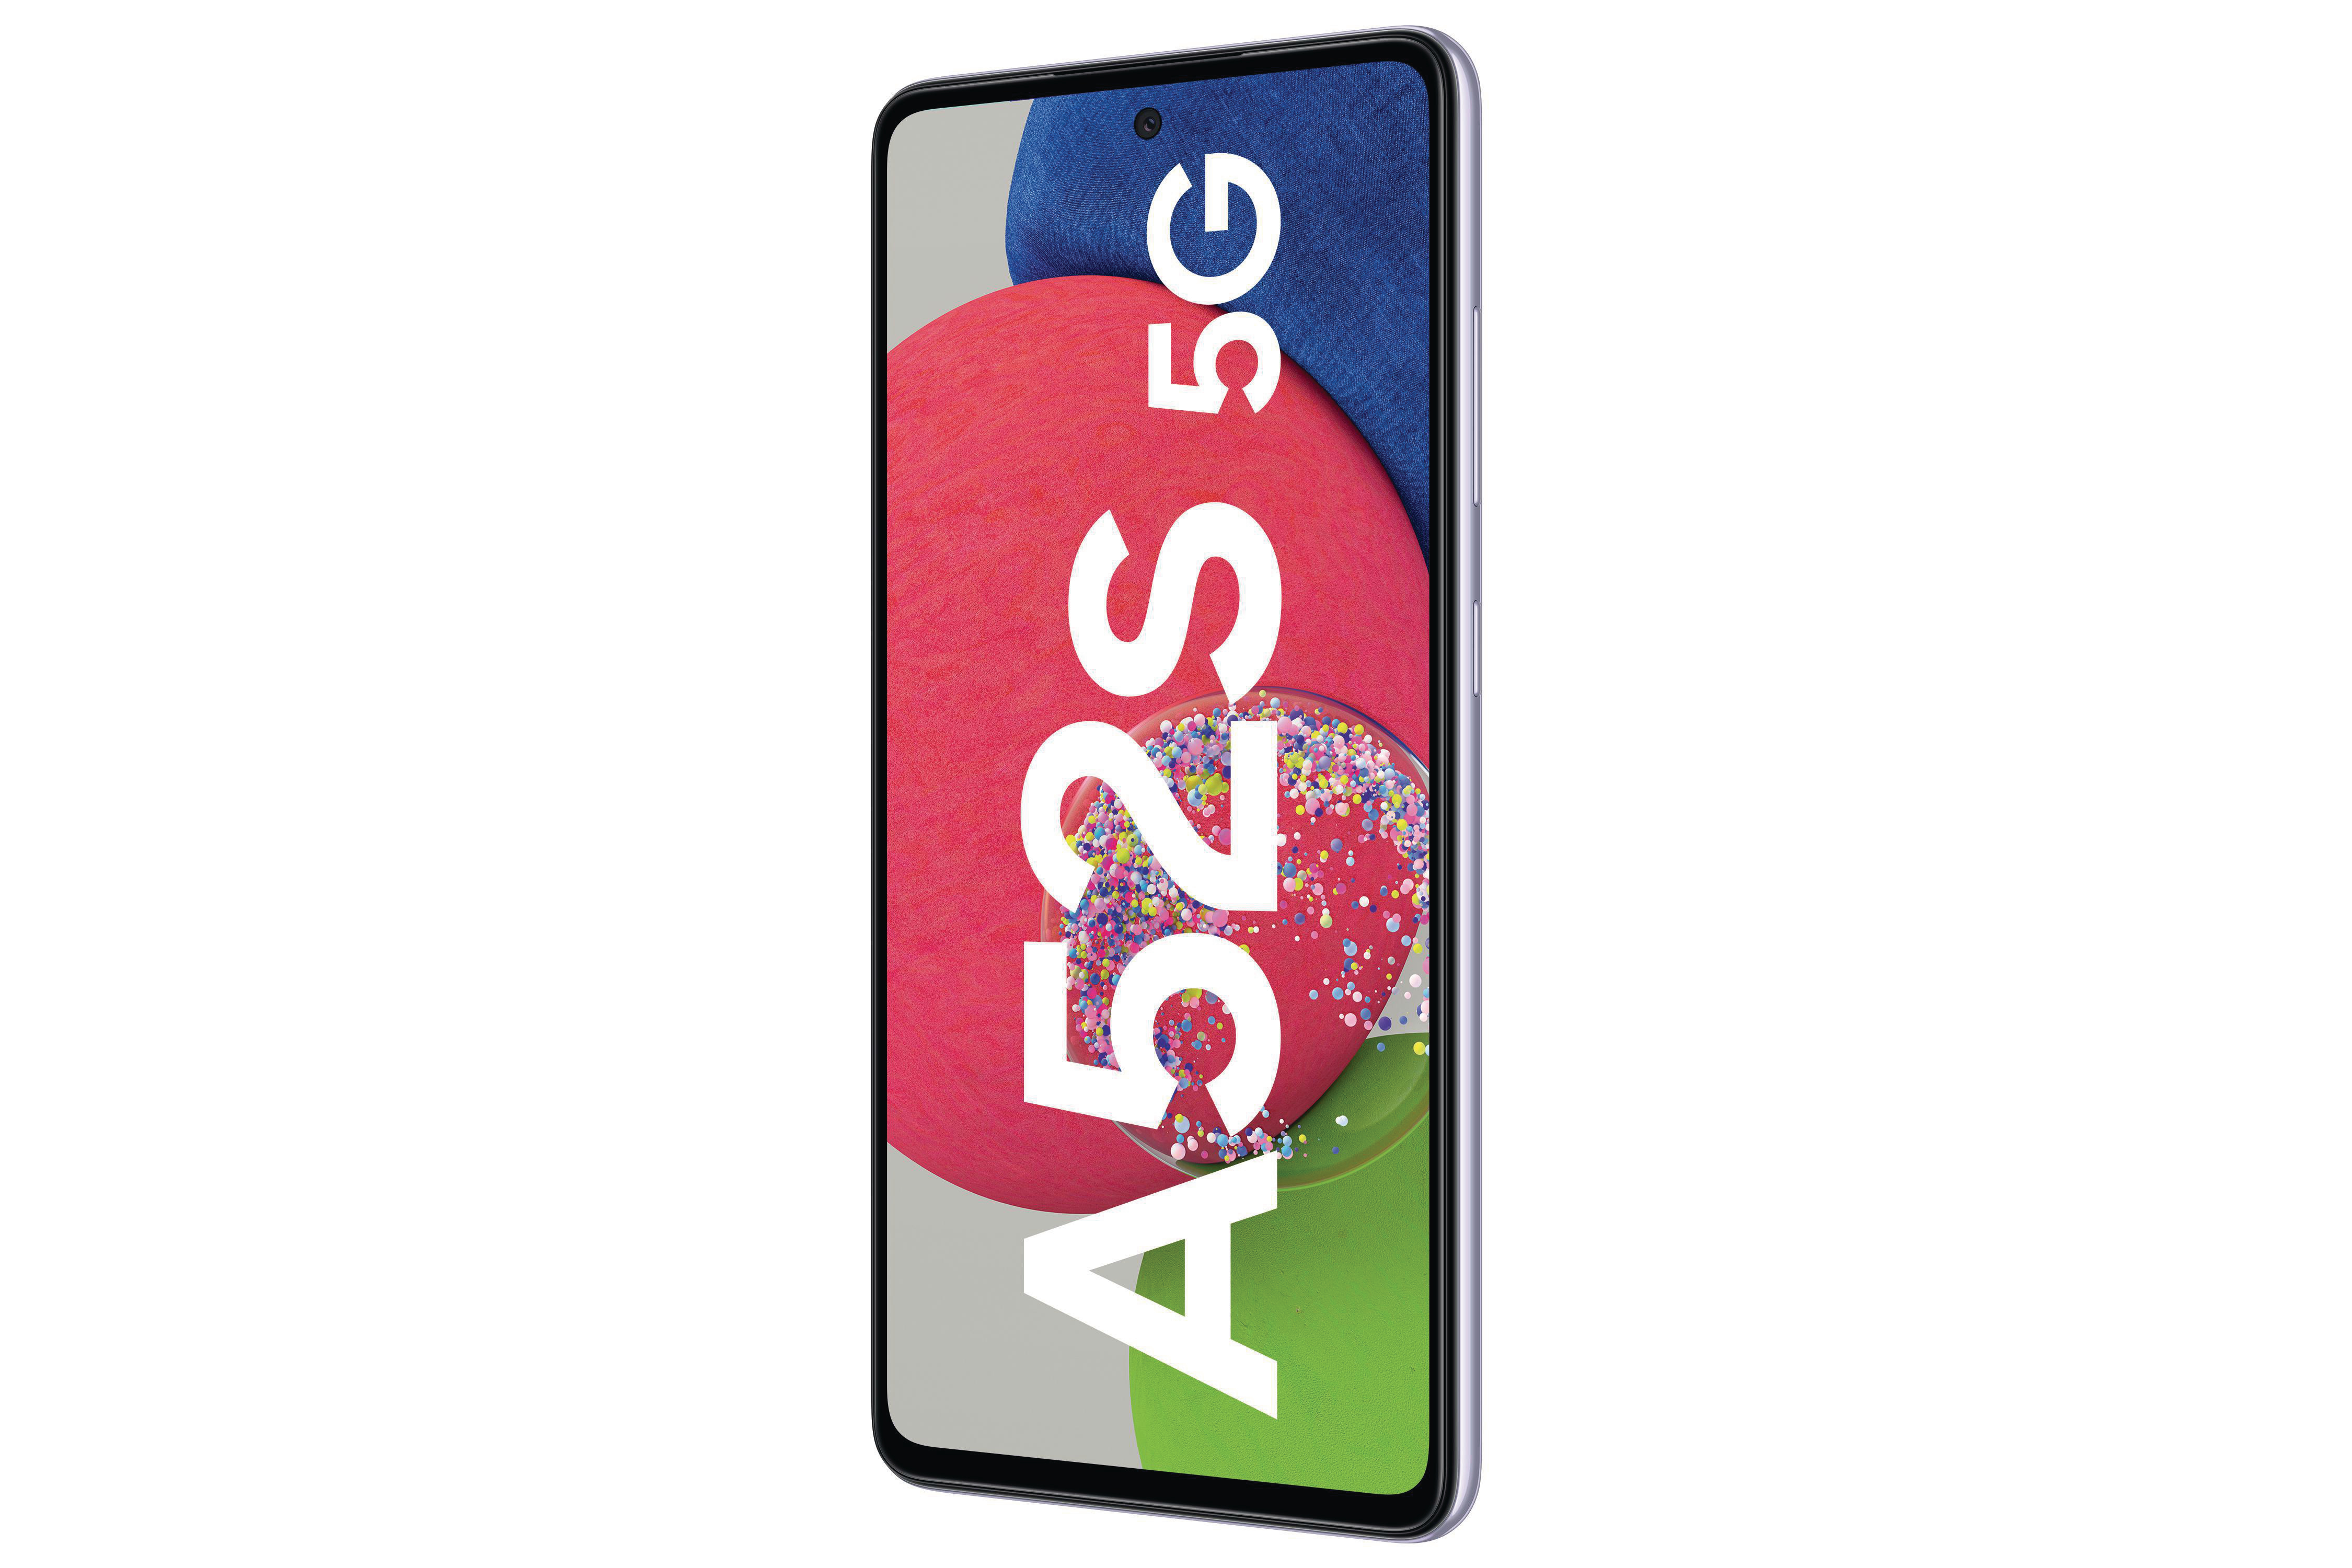 Violet Awesome Dual 256 SAMSUNG 5G SIM Galaxy A52s GB